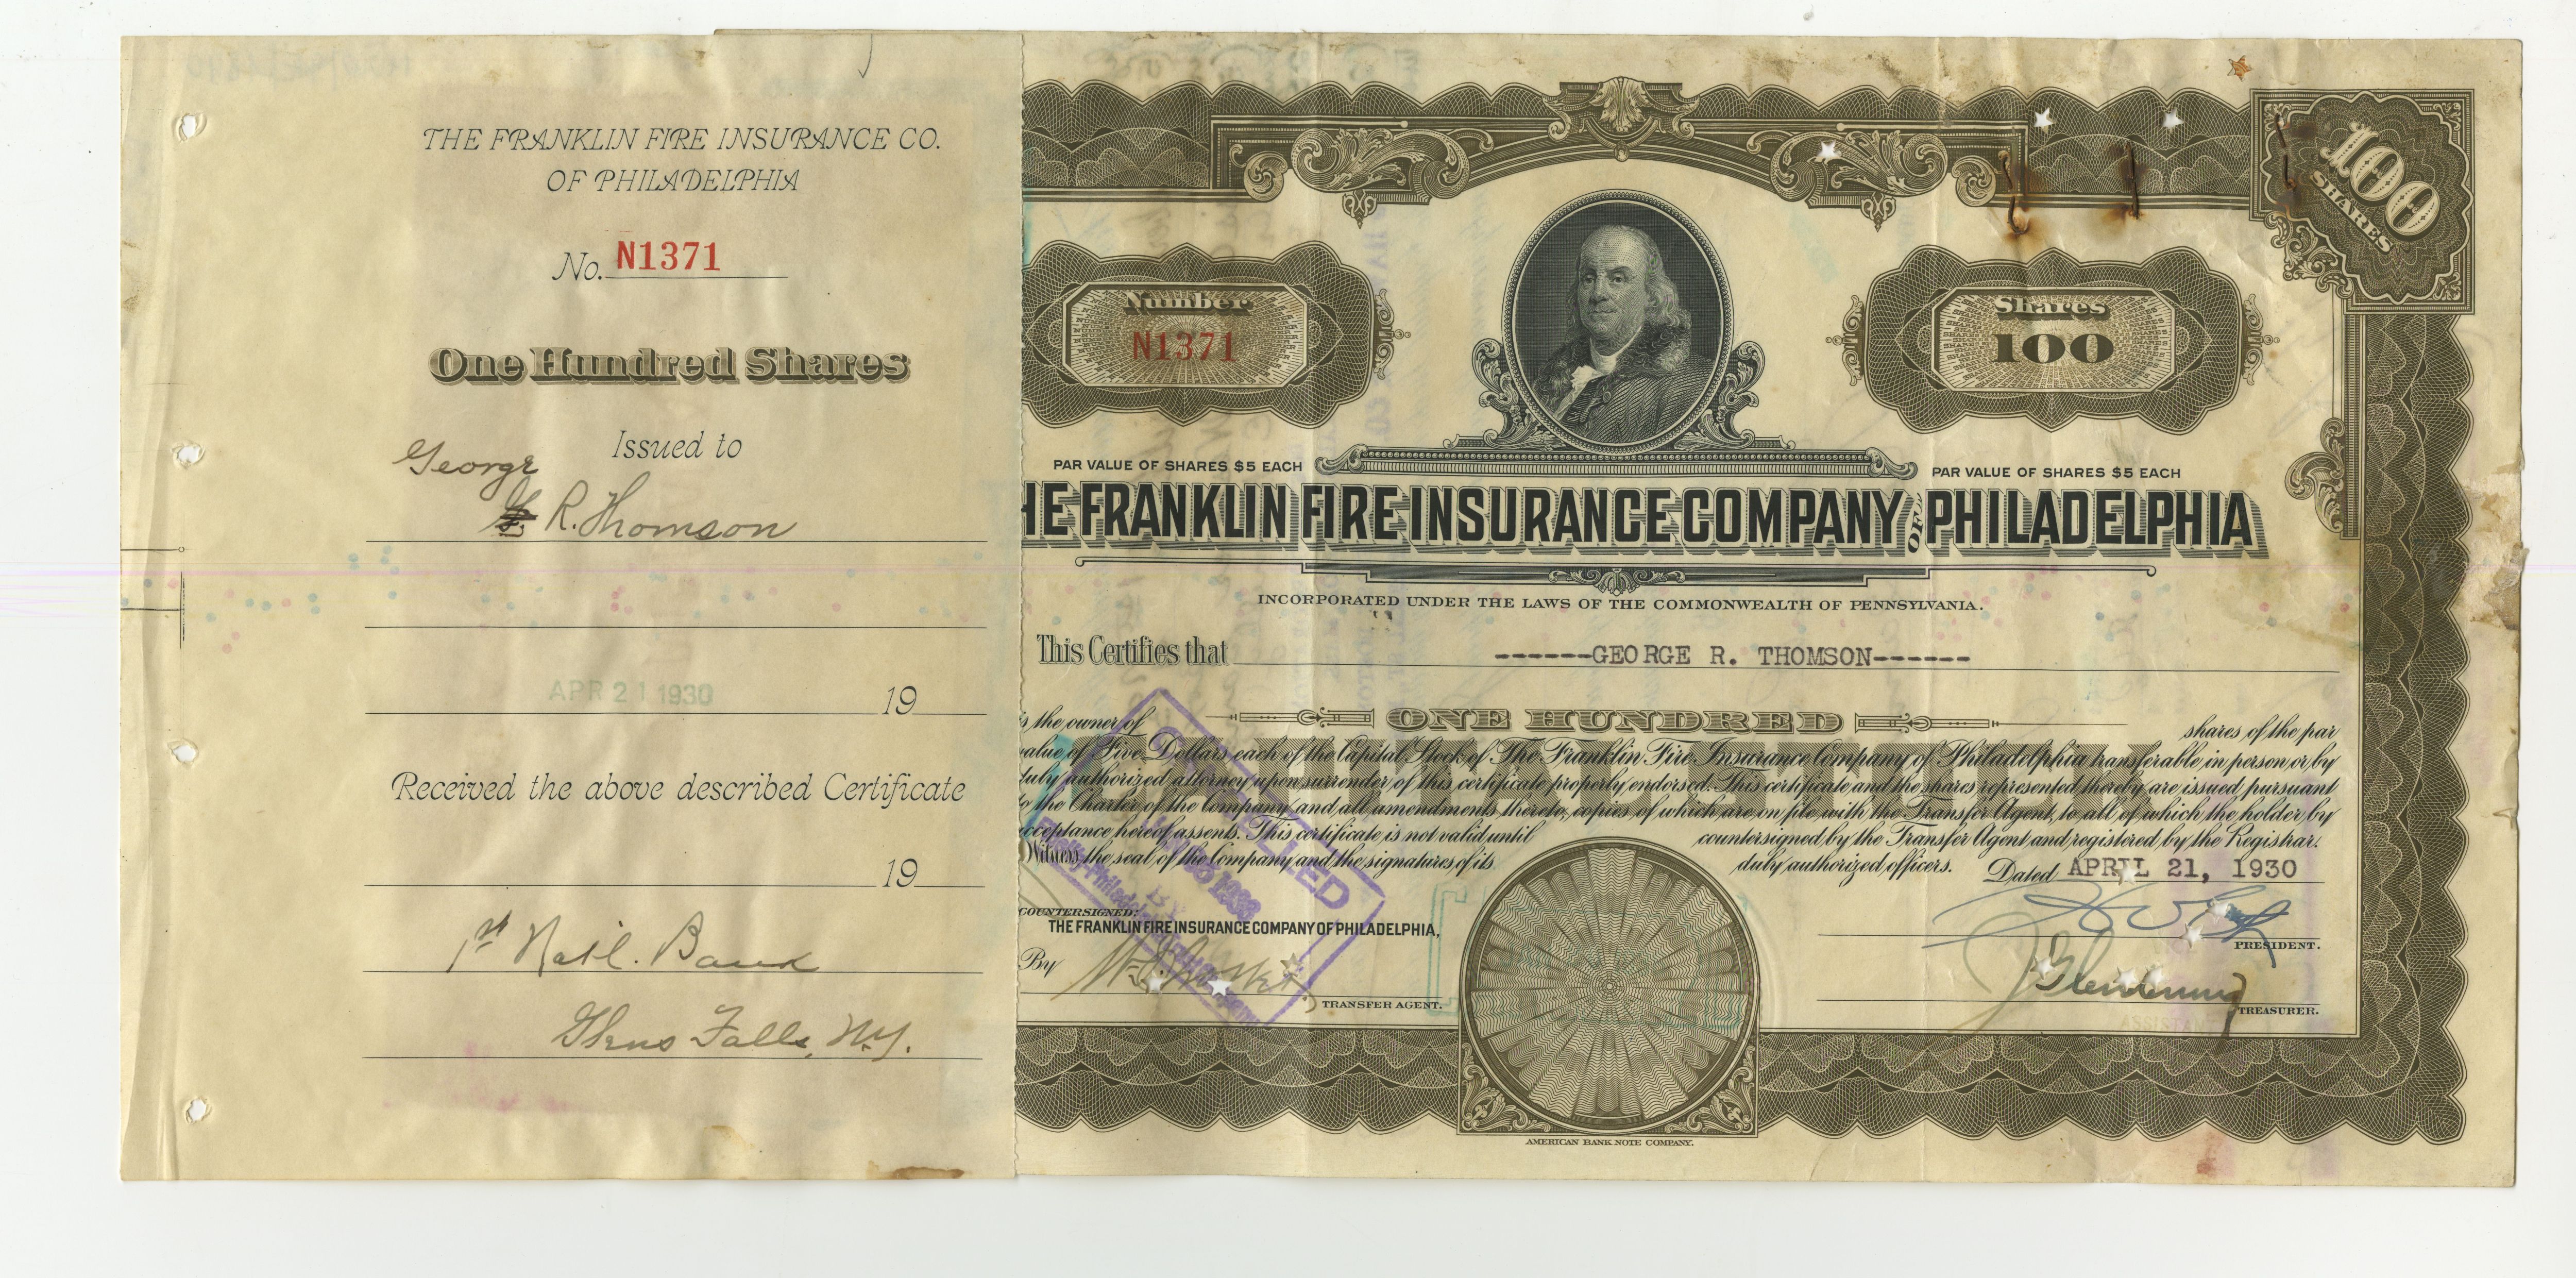 100 akcji The Franklin Fire Insurance Company of Philadelphia z 21 kwietnia 1930 roku.